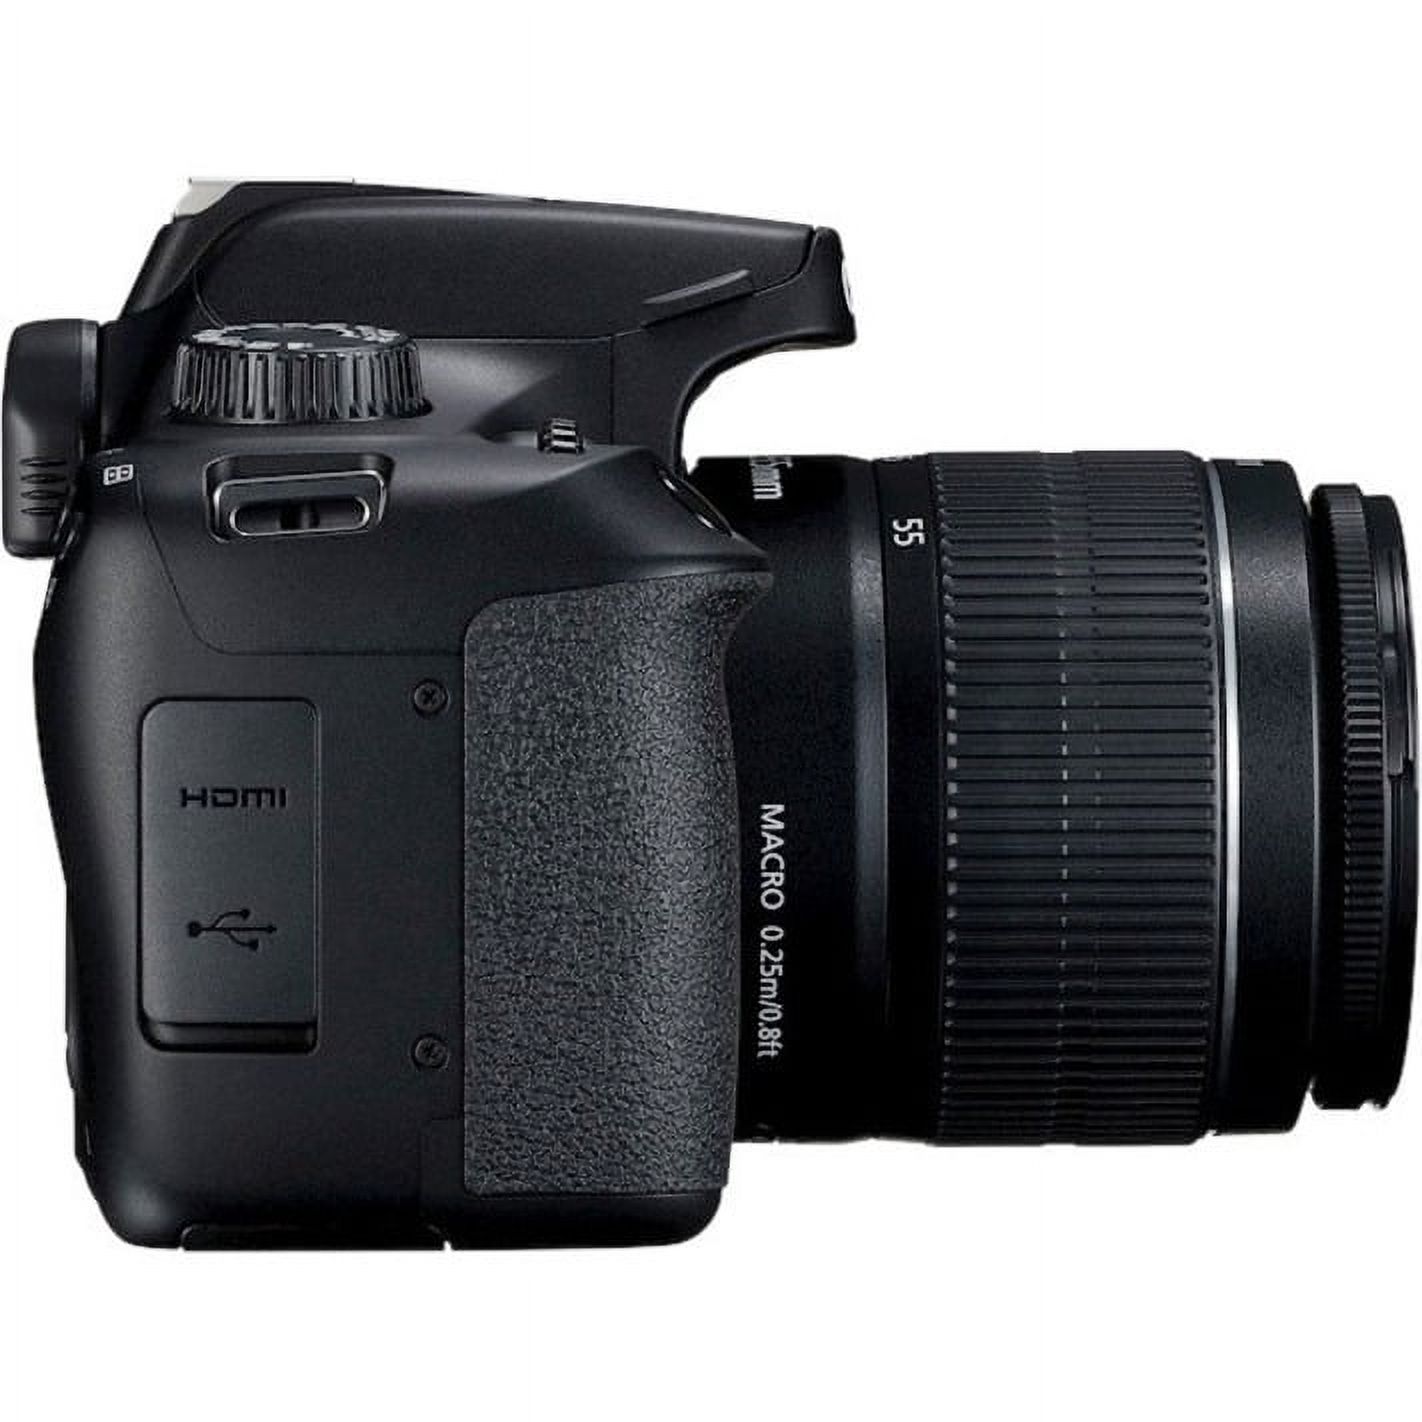 Canon EOS Rebel T100 18 Megapixel Digital SLR Camera with Lens, 0.71", 2.17", Black - image 5 of 10